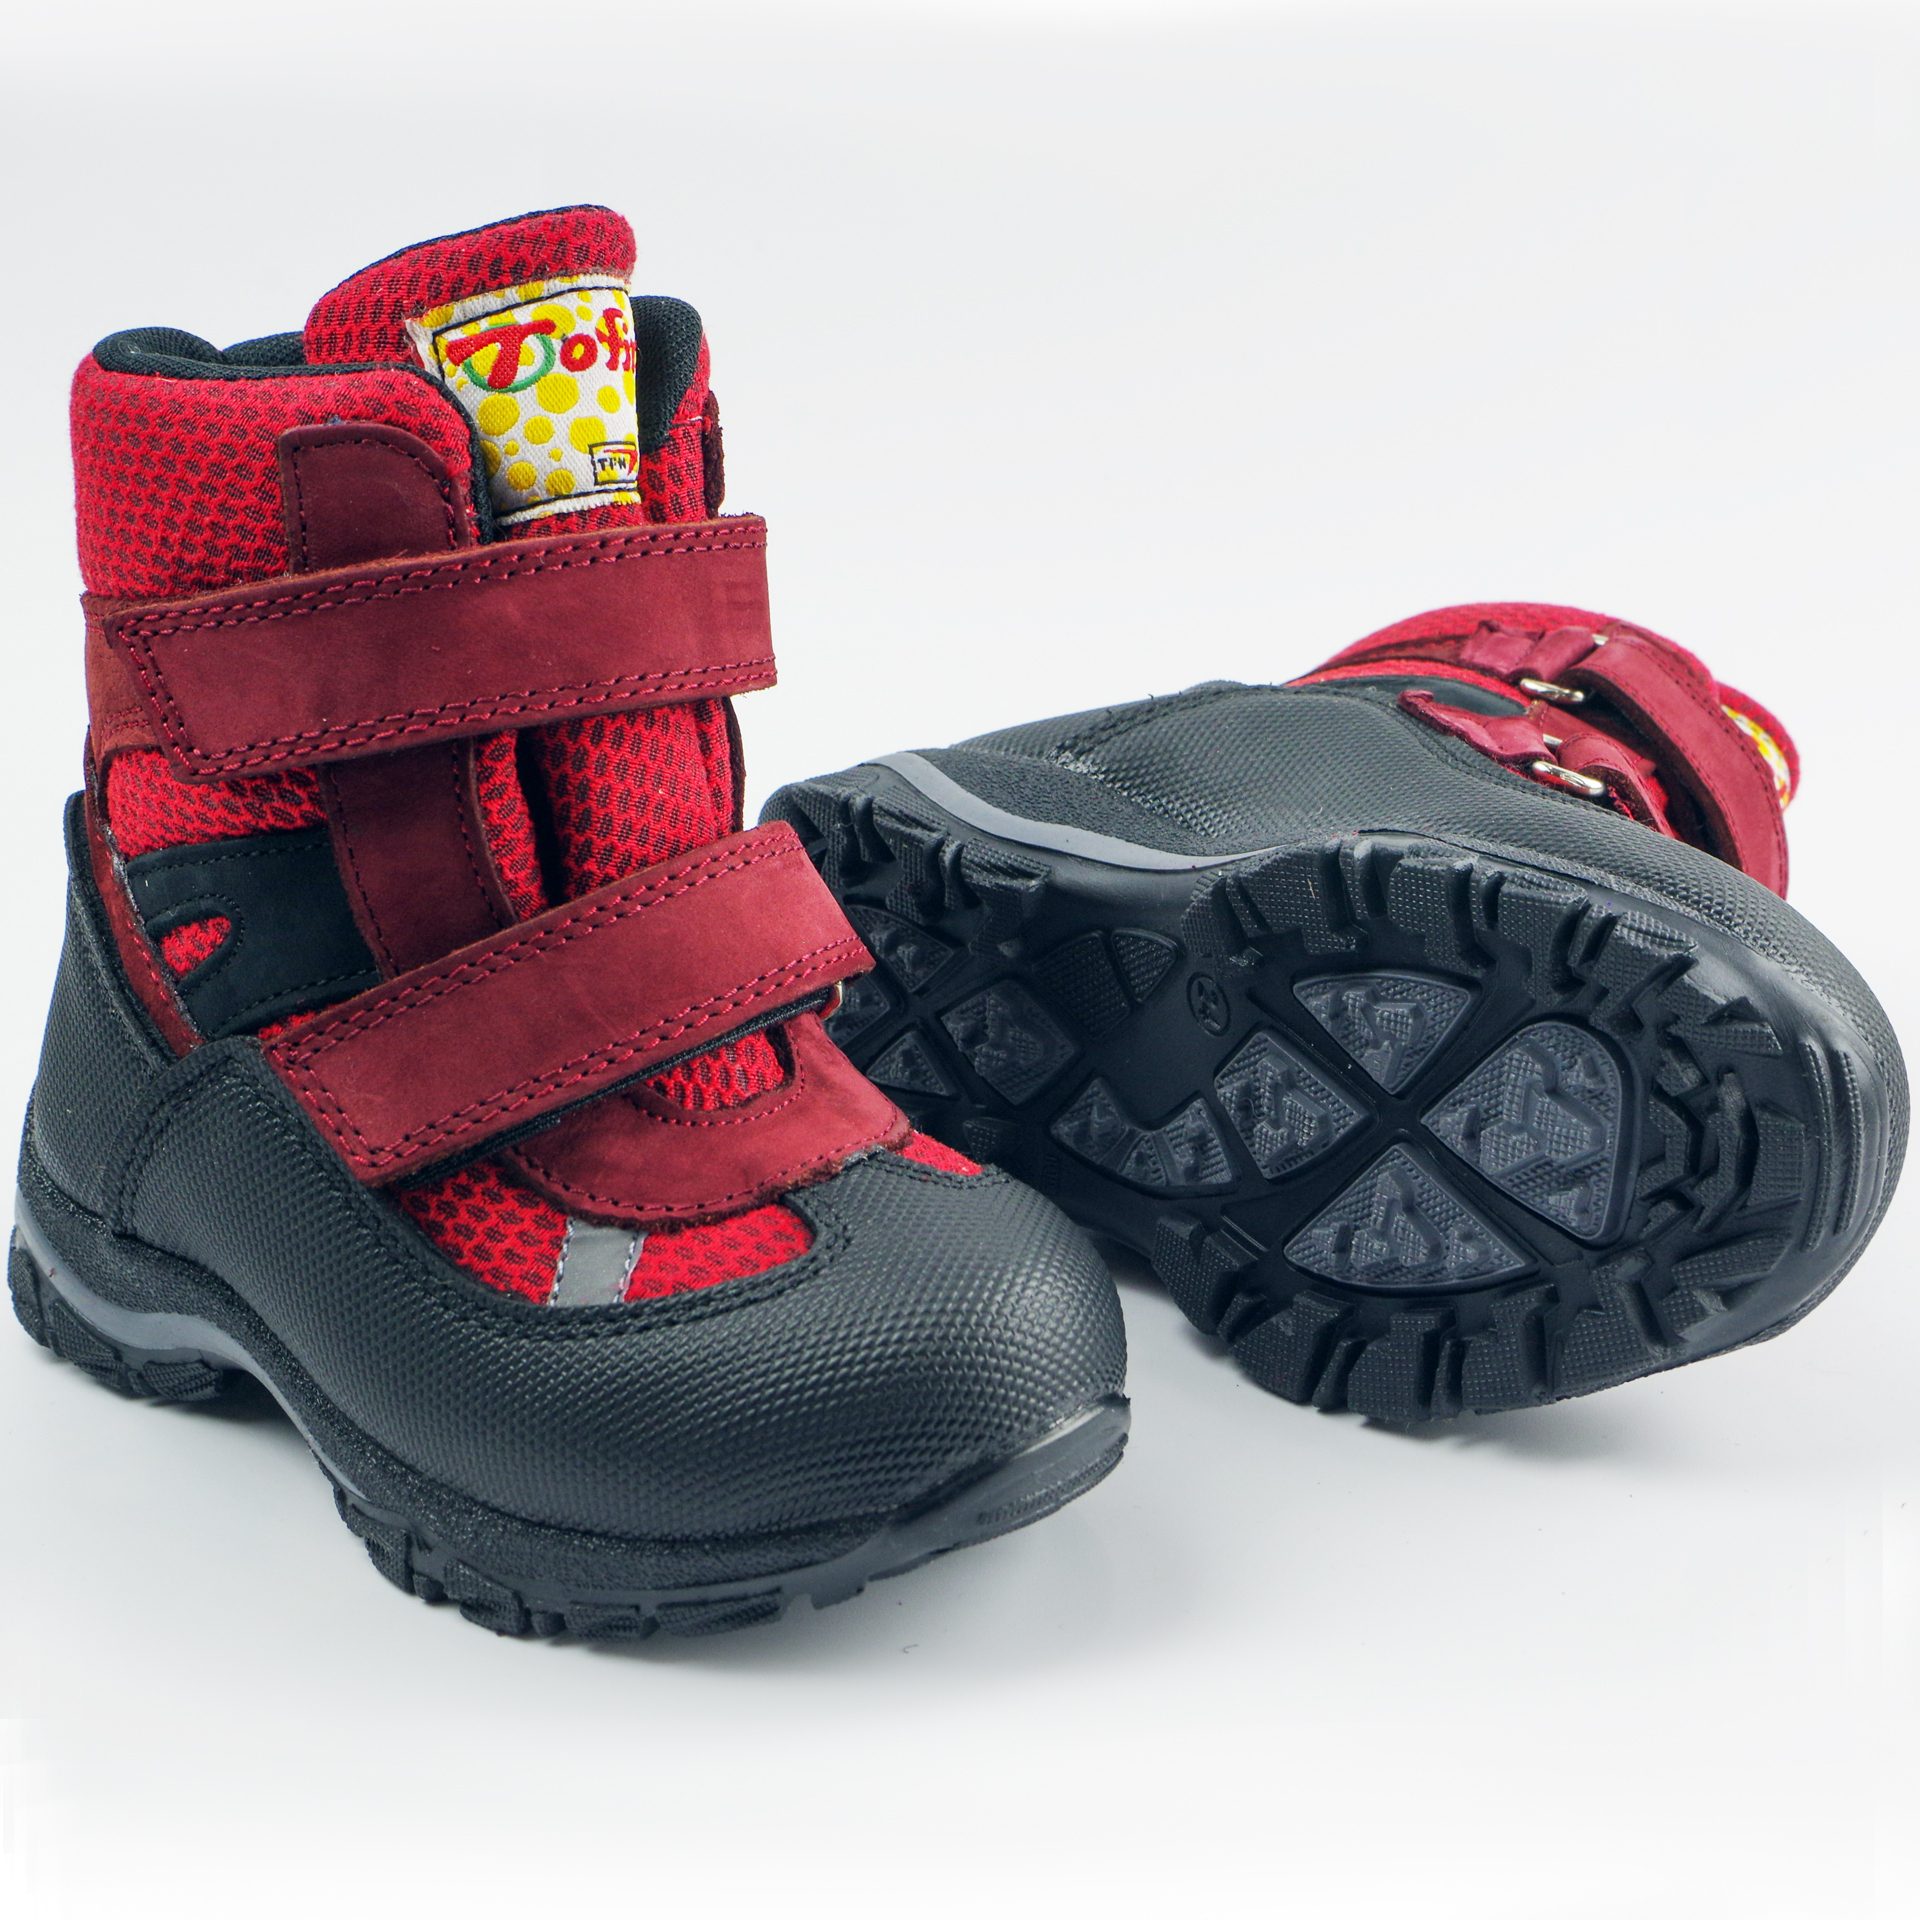 Мембранные зимние ботинки (2145) материал Мембрана, цвет Красный  для девочки 22-25 размеры – Sole Kids, Днепр. Фото 4